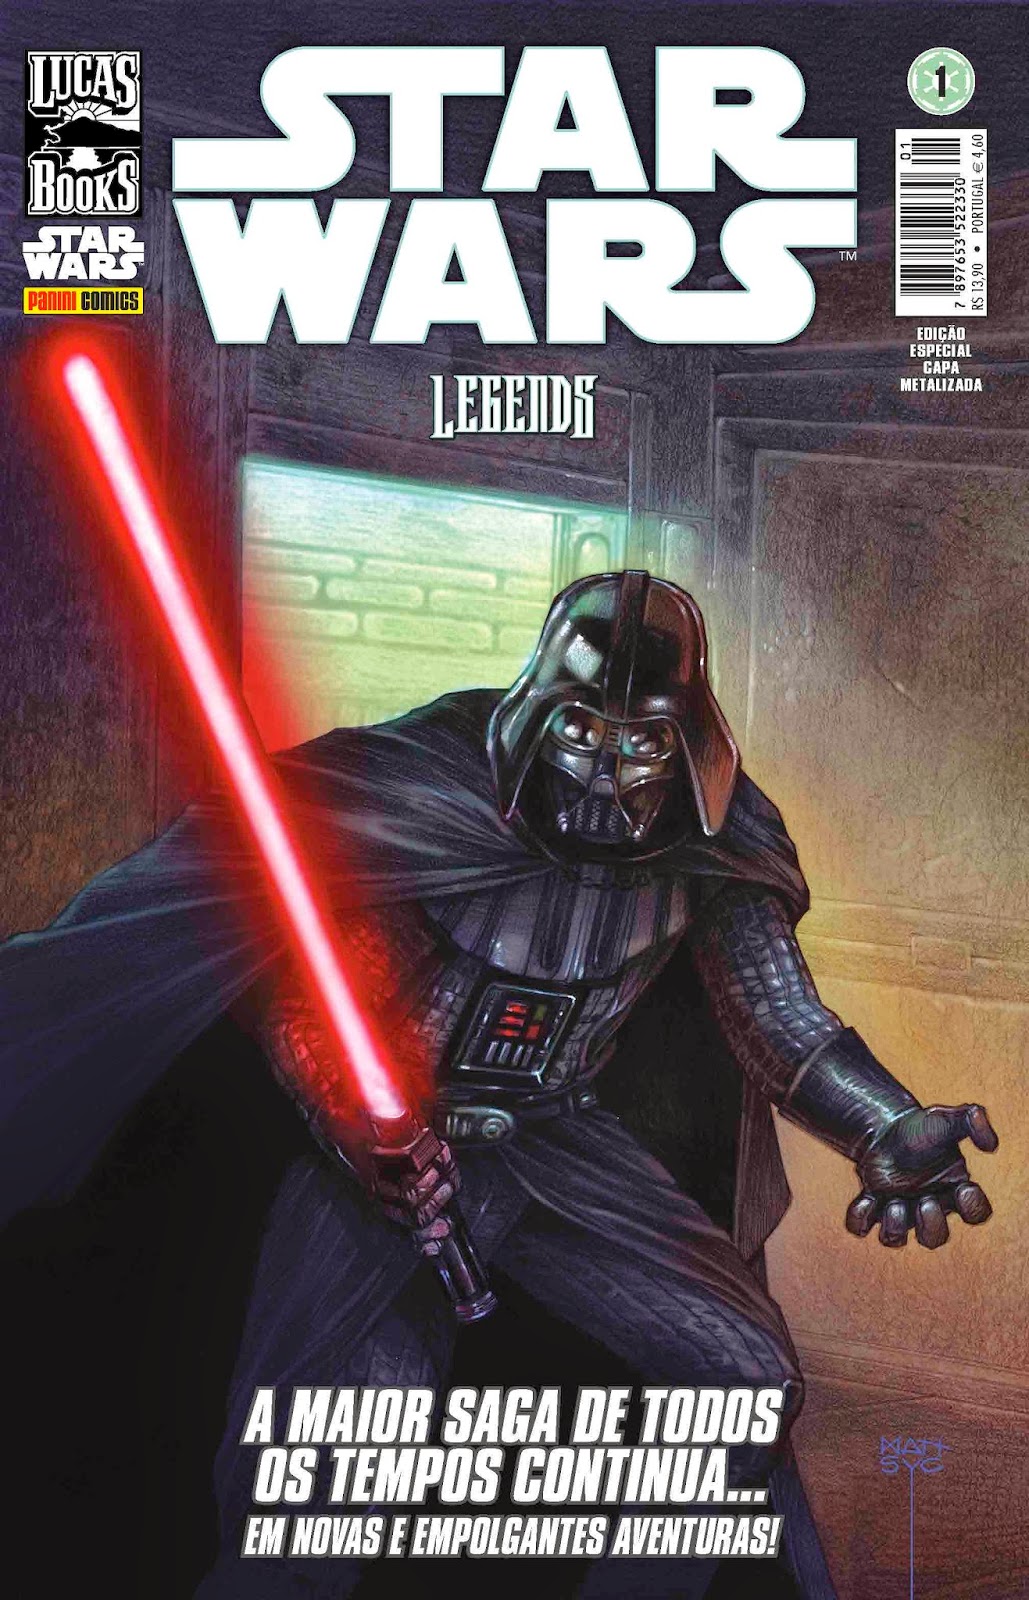 TV Brinquedos: Xadrez Star Wars vem em banca de revistas